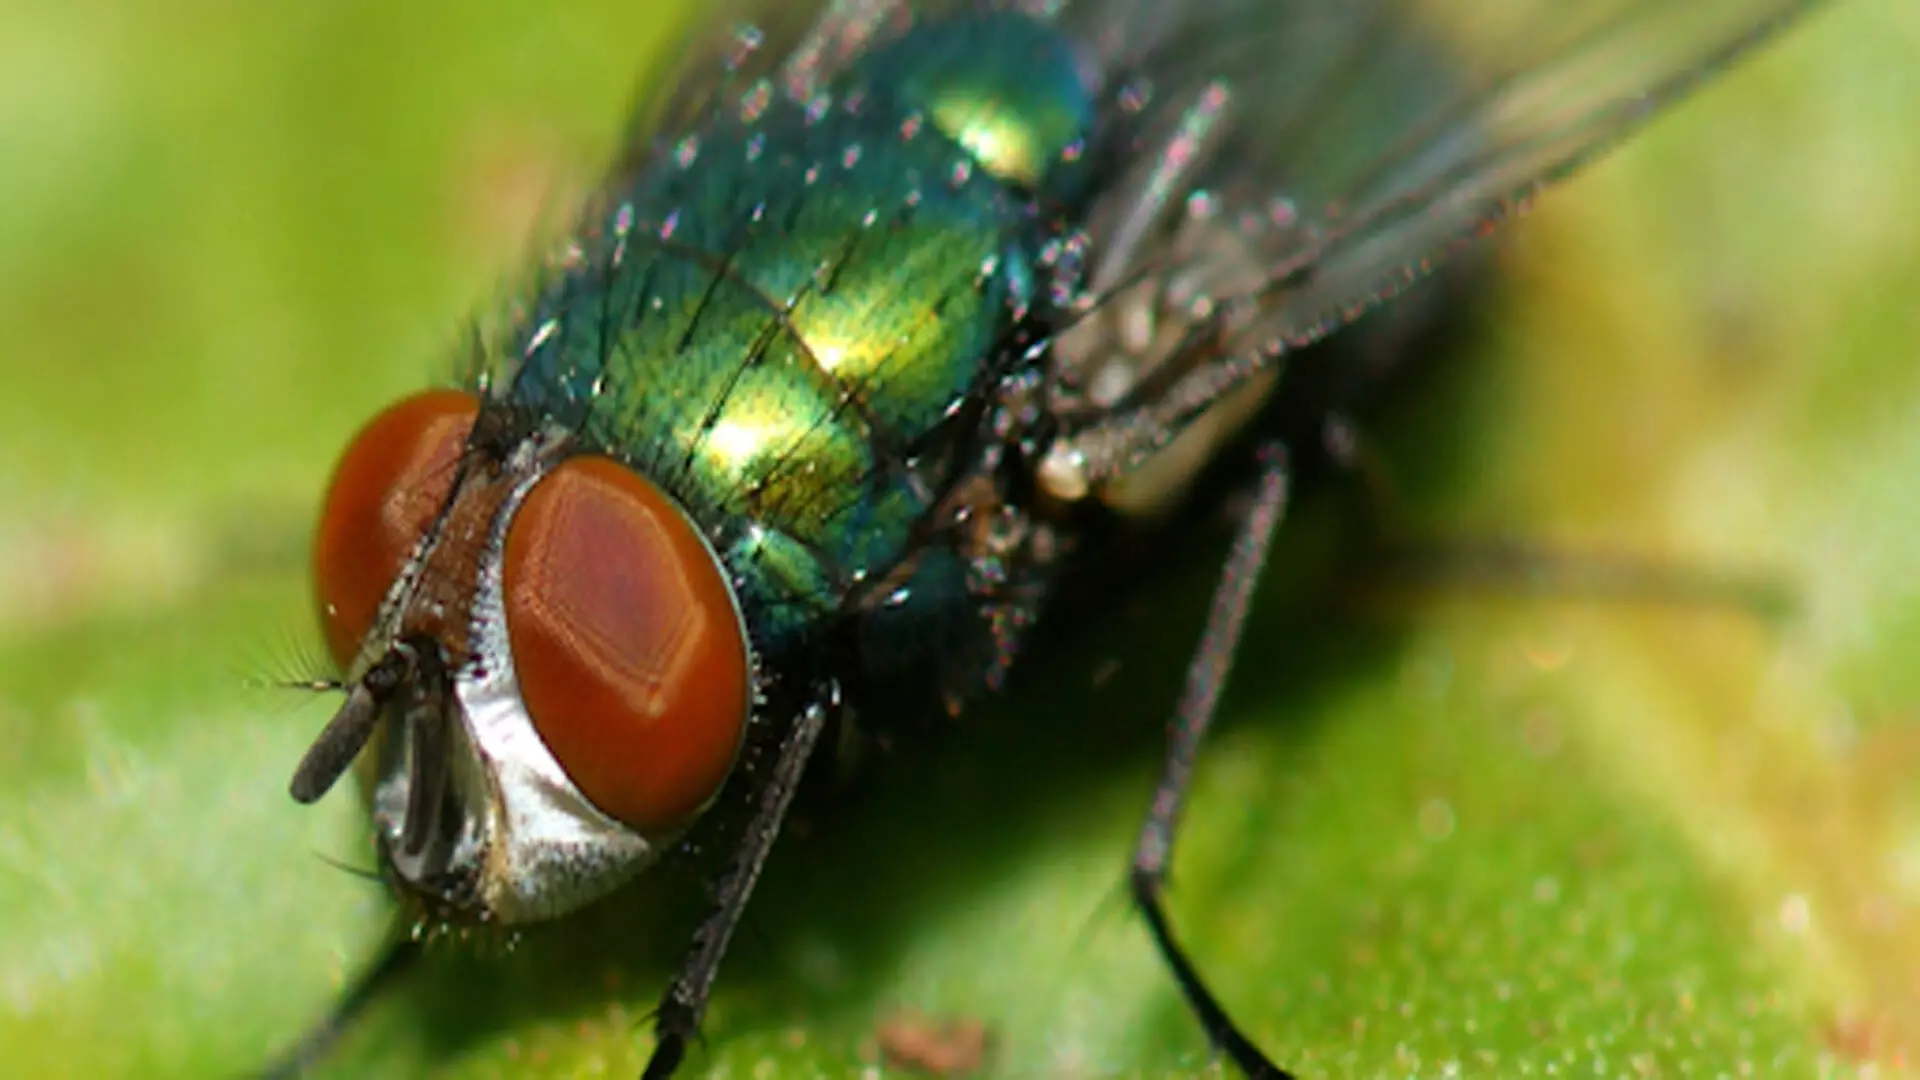 China: चेहरे पर बैठी मक्खी को मारना पड़ा भारी, शख्स ने खो दी आंख